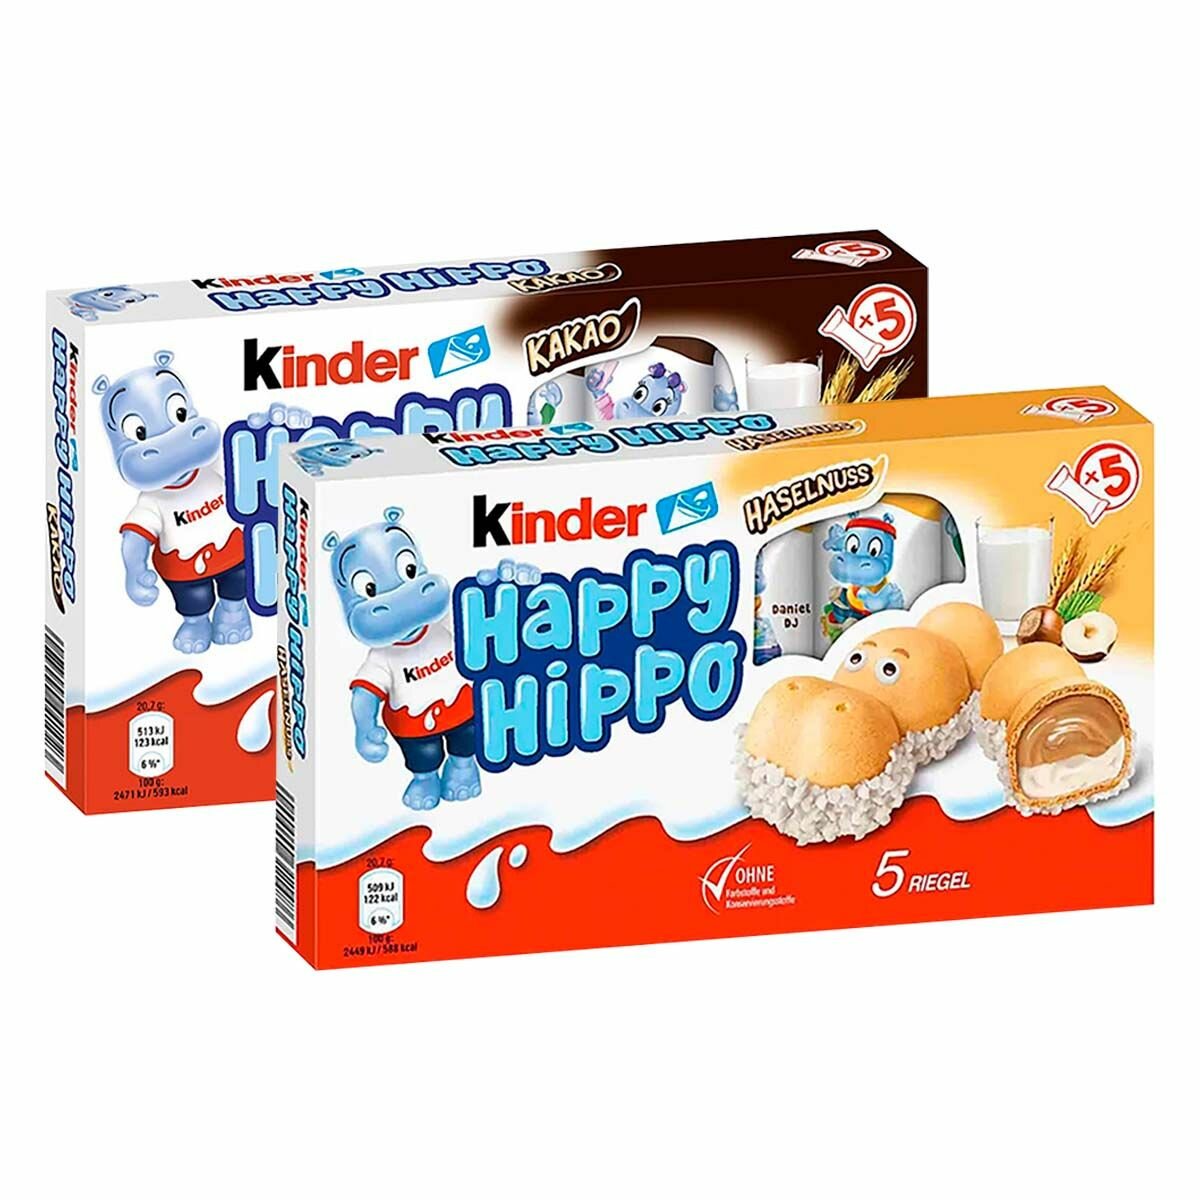 Печенье Kinder Happy Hippo набор - 2 вкуса (Hazelnut, Cacao), (Германия), 103,5 г